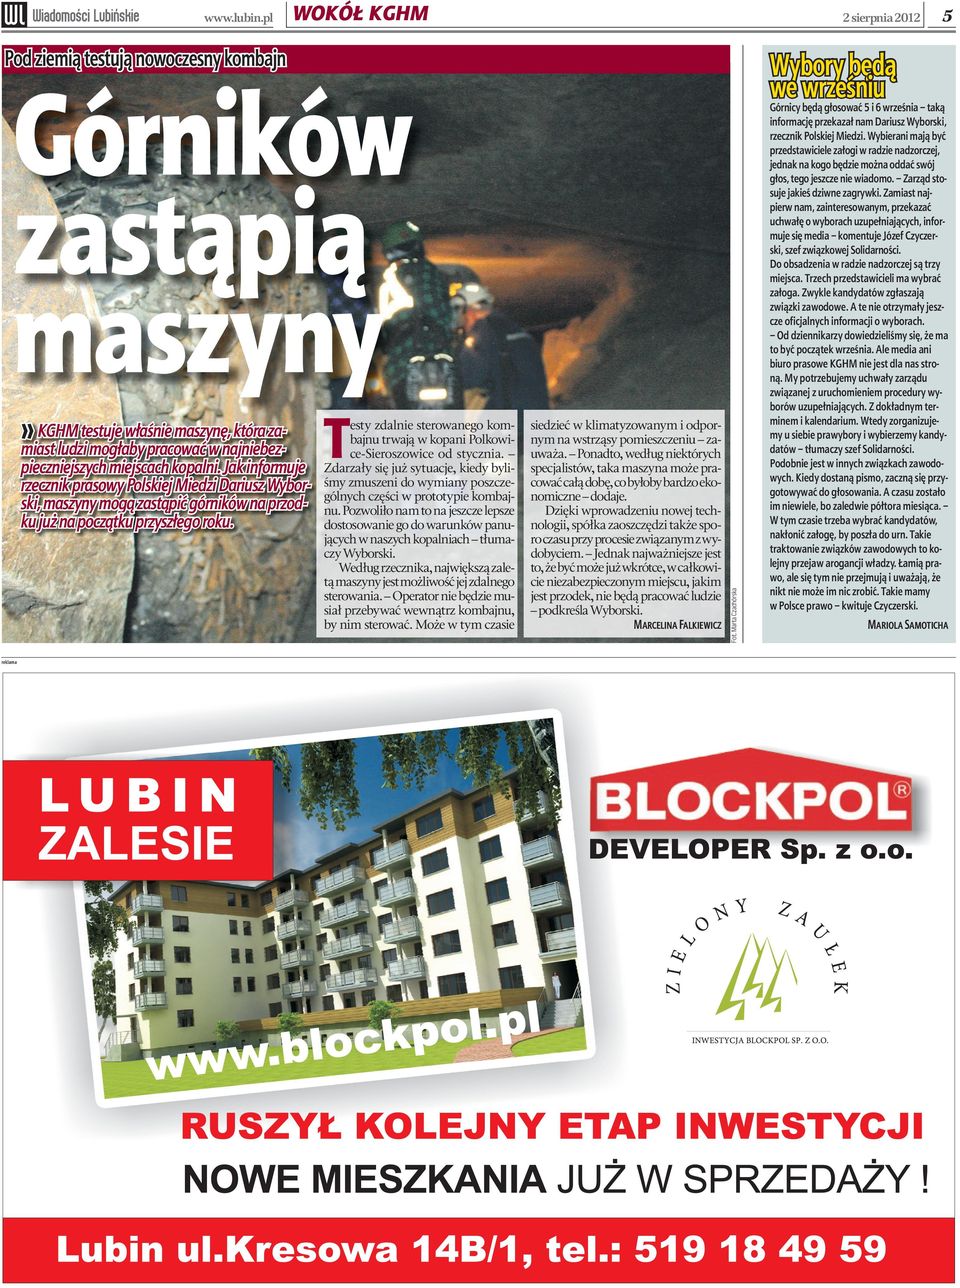 reklama T esty zdalnie sterowanego kombajnu trwają w kopani Polkowice-Sieroszowice od stycznia.